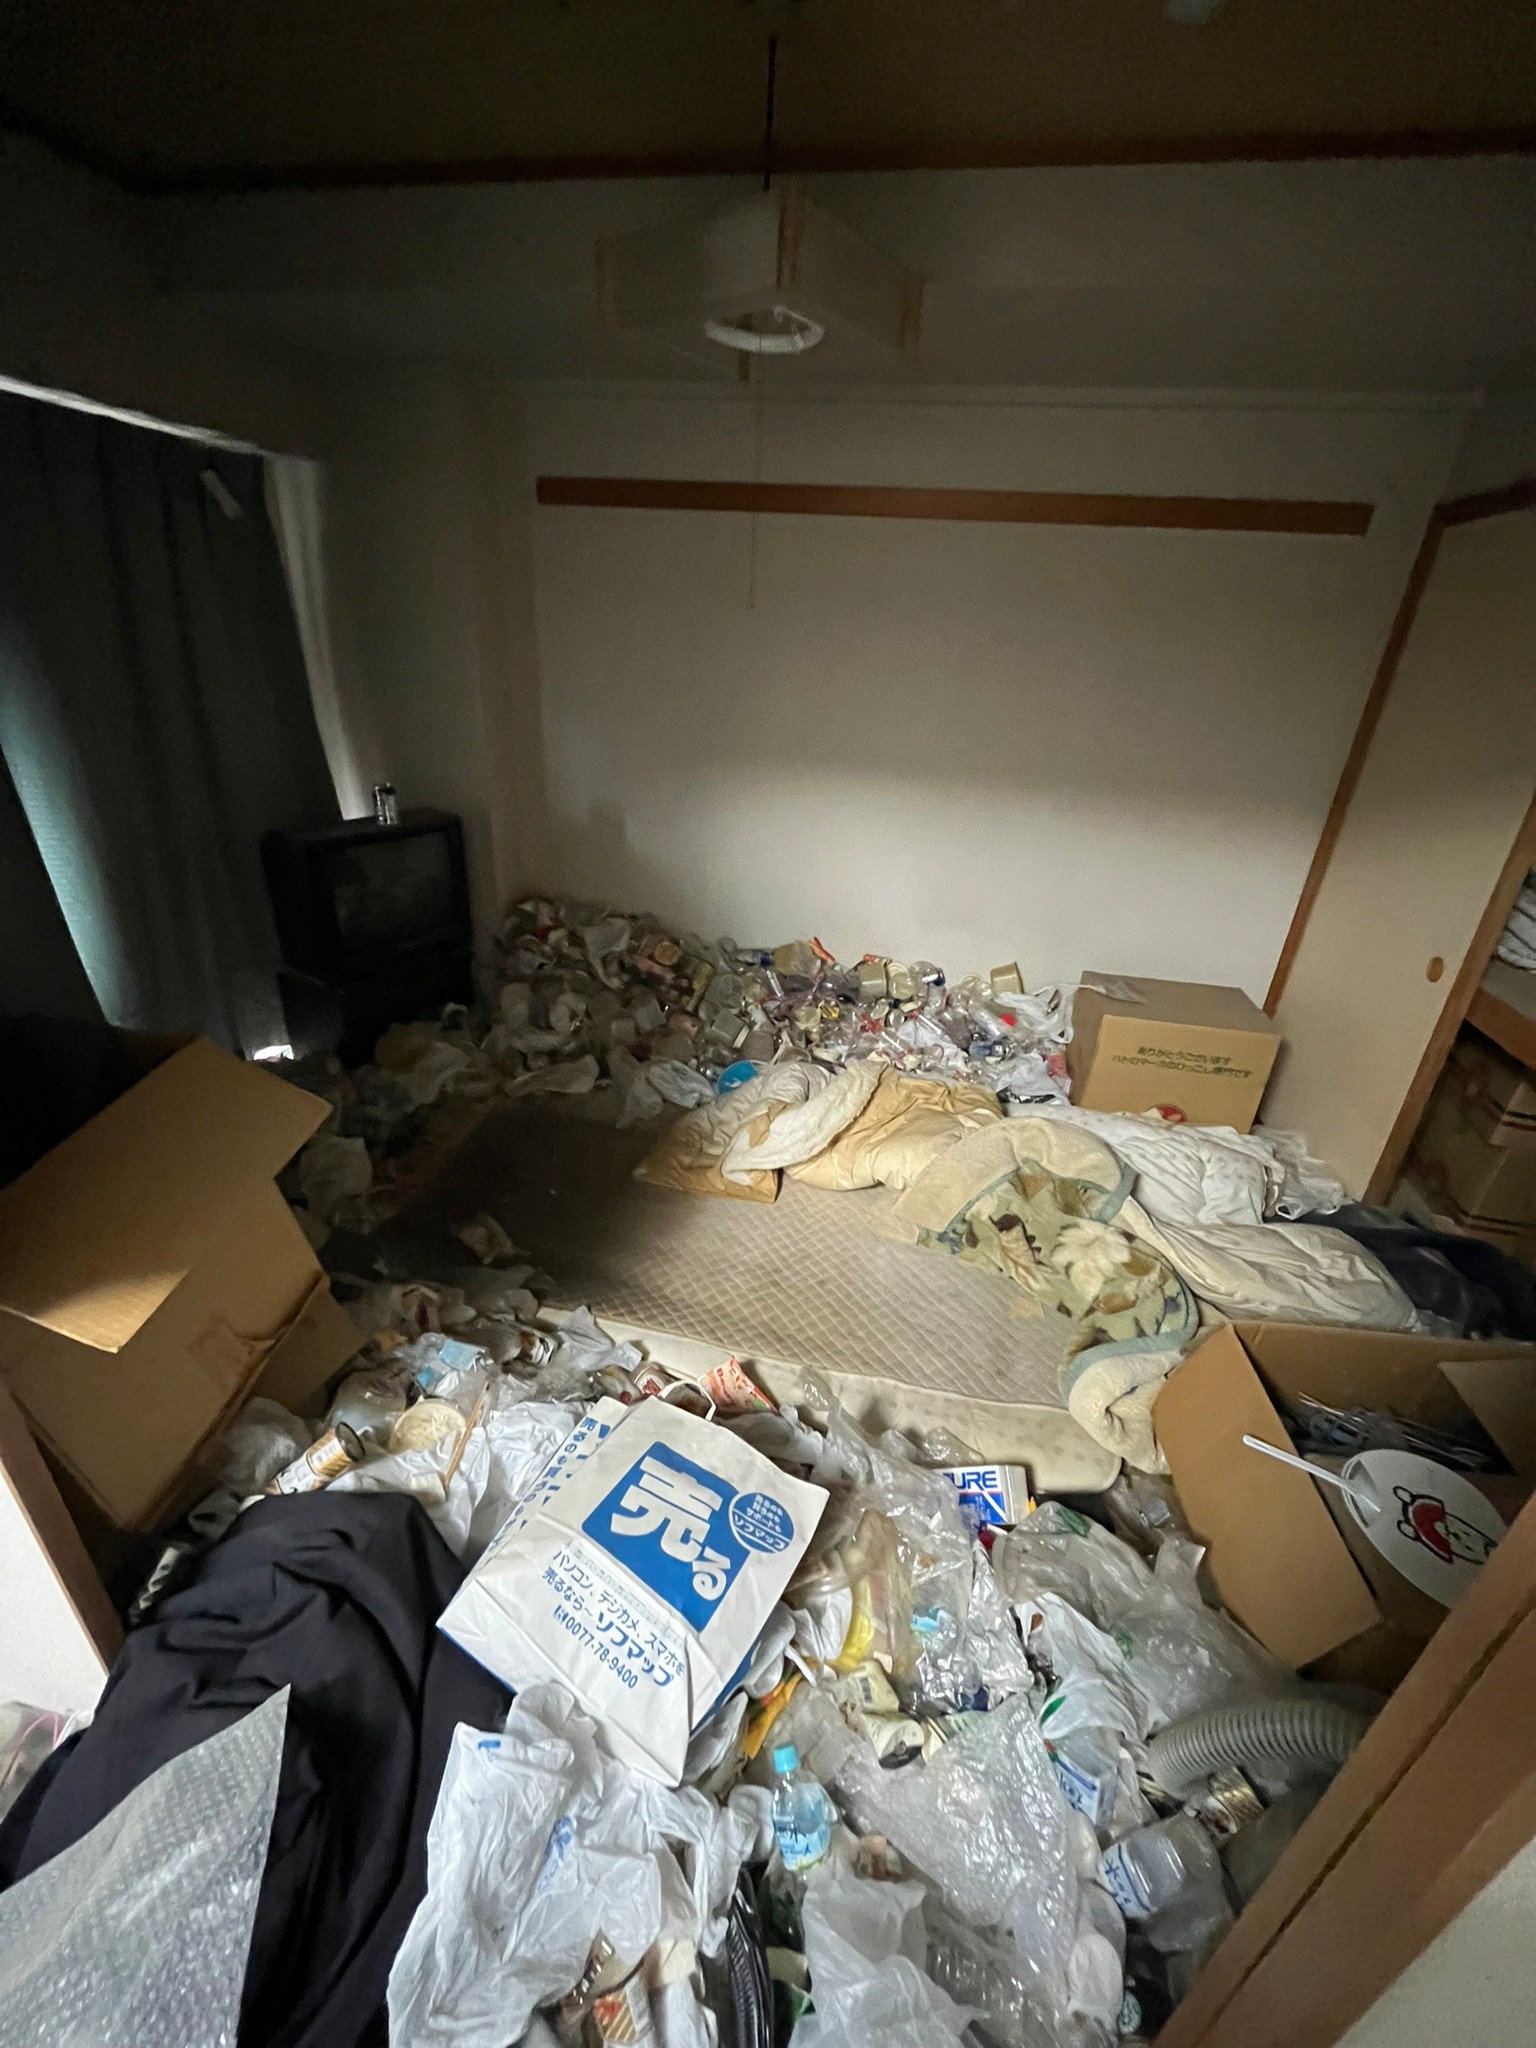 テレビ、段ボール、衣類、ペットボトルなど家庭ゴミ1部屋分の回収前の状態